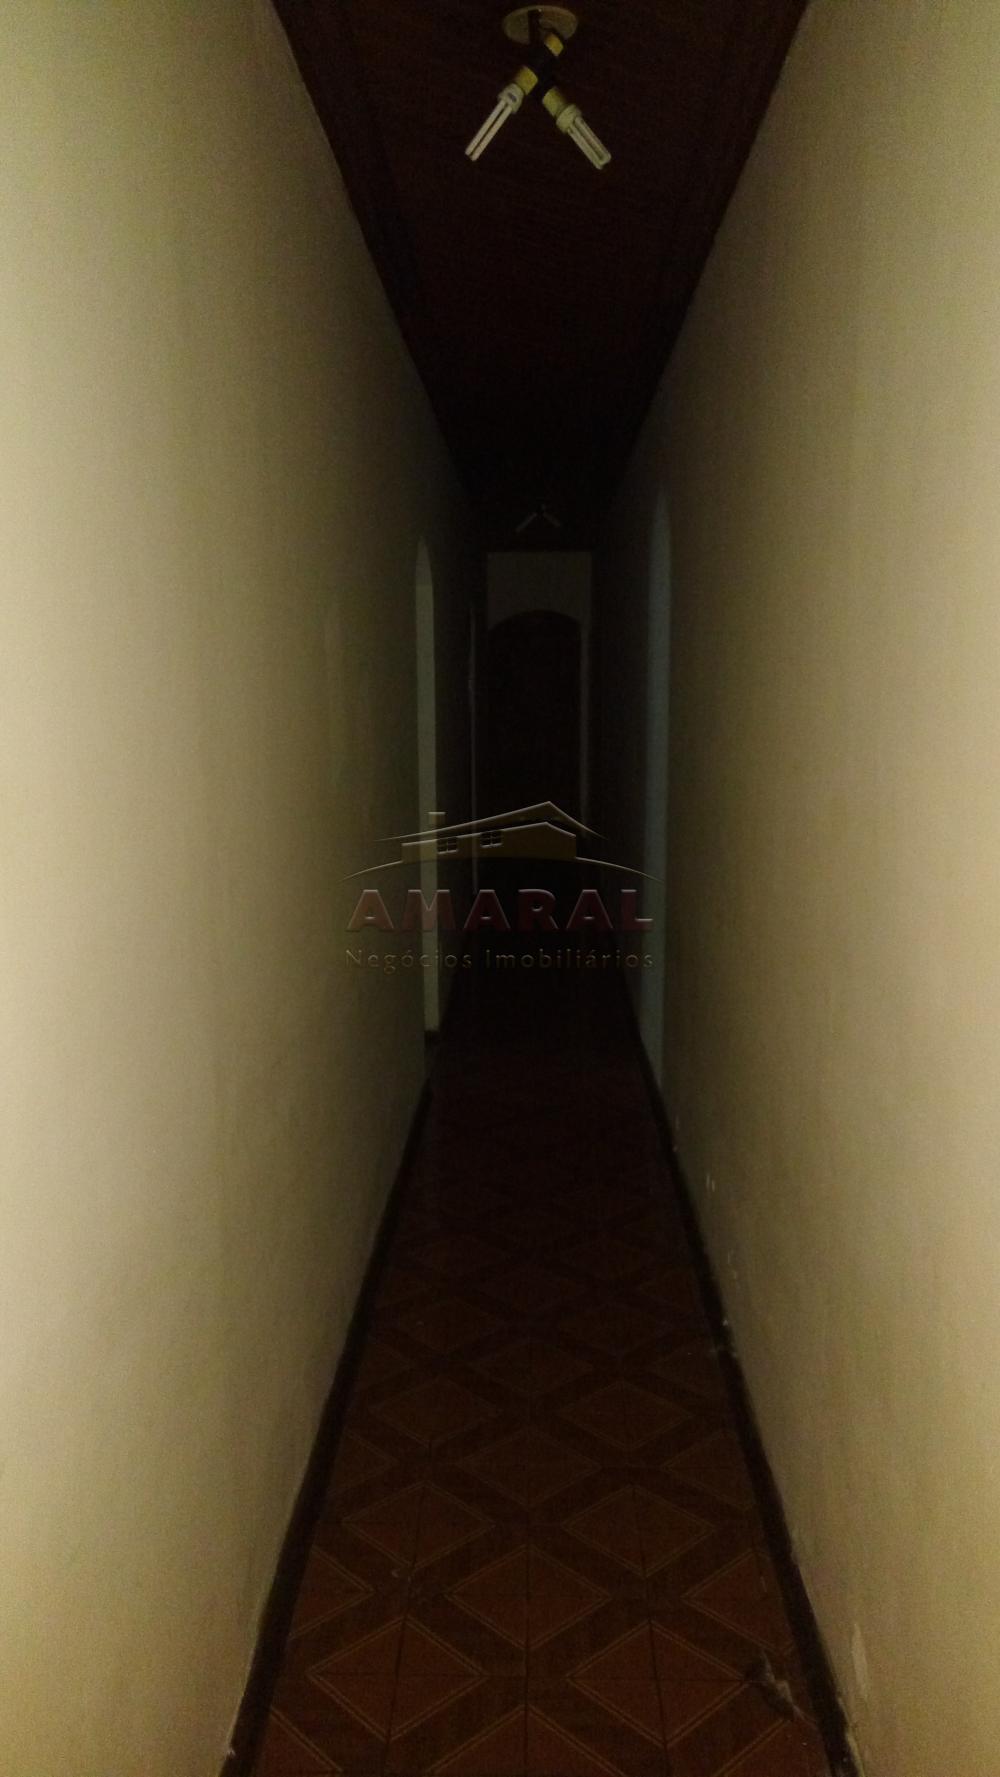 Alugar Casas / Térrea em Suzano R$ 2.200,00 - Foto 12